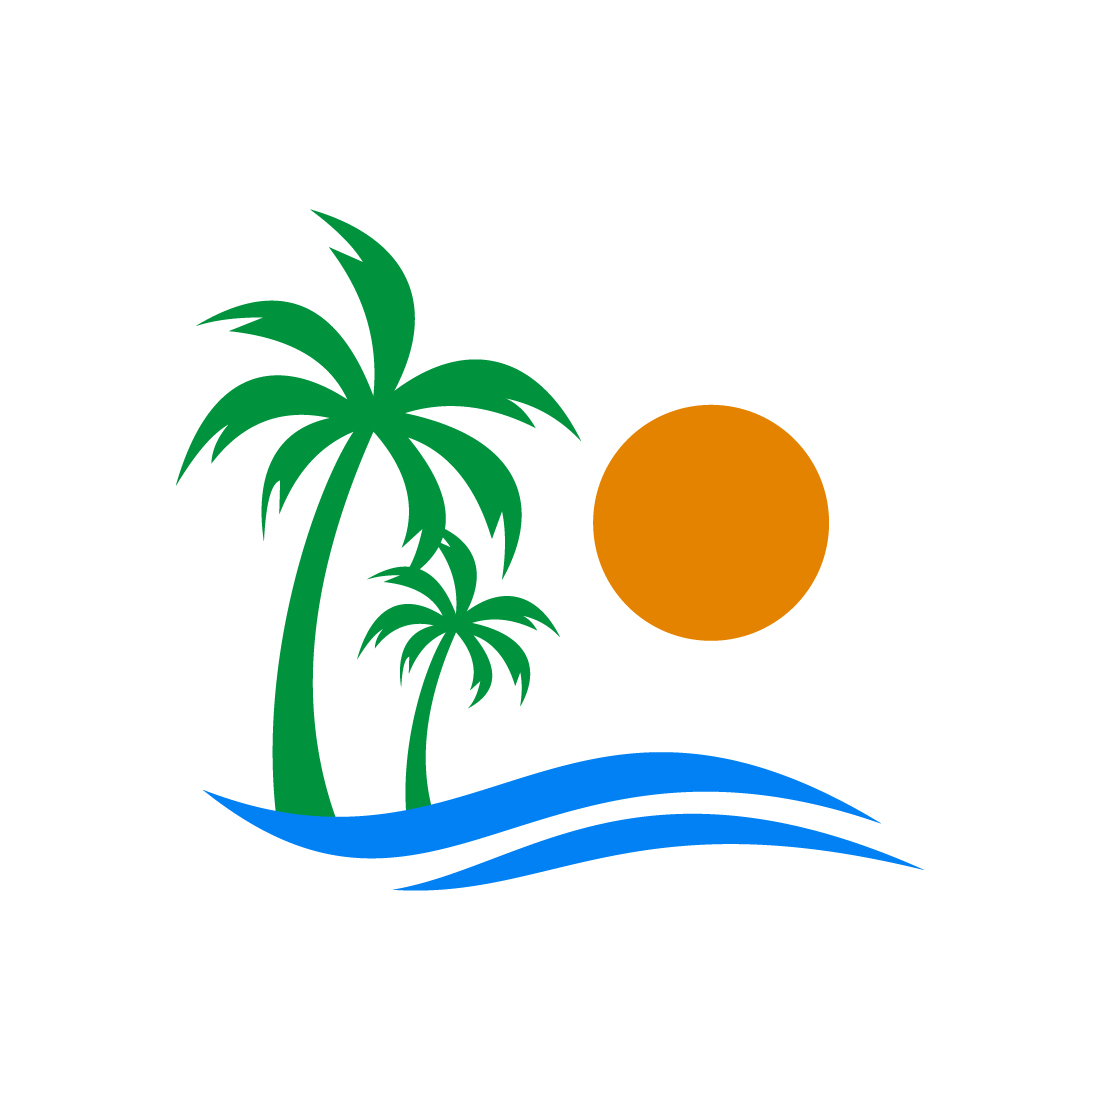 Creative Beach logo design, Vector design concept preview image.